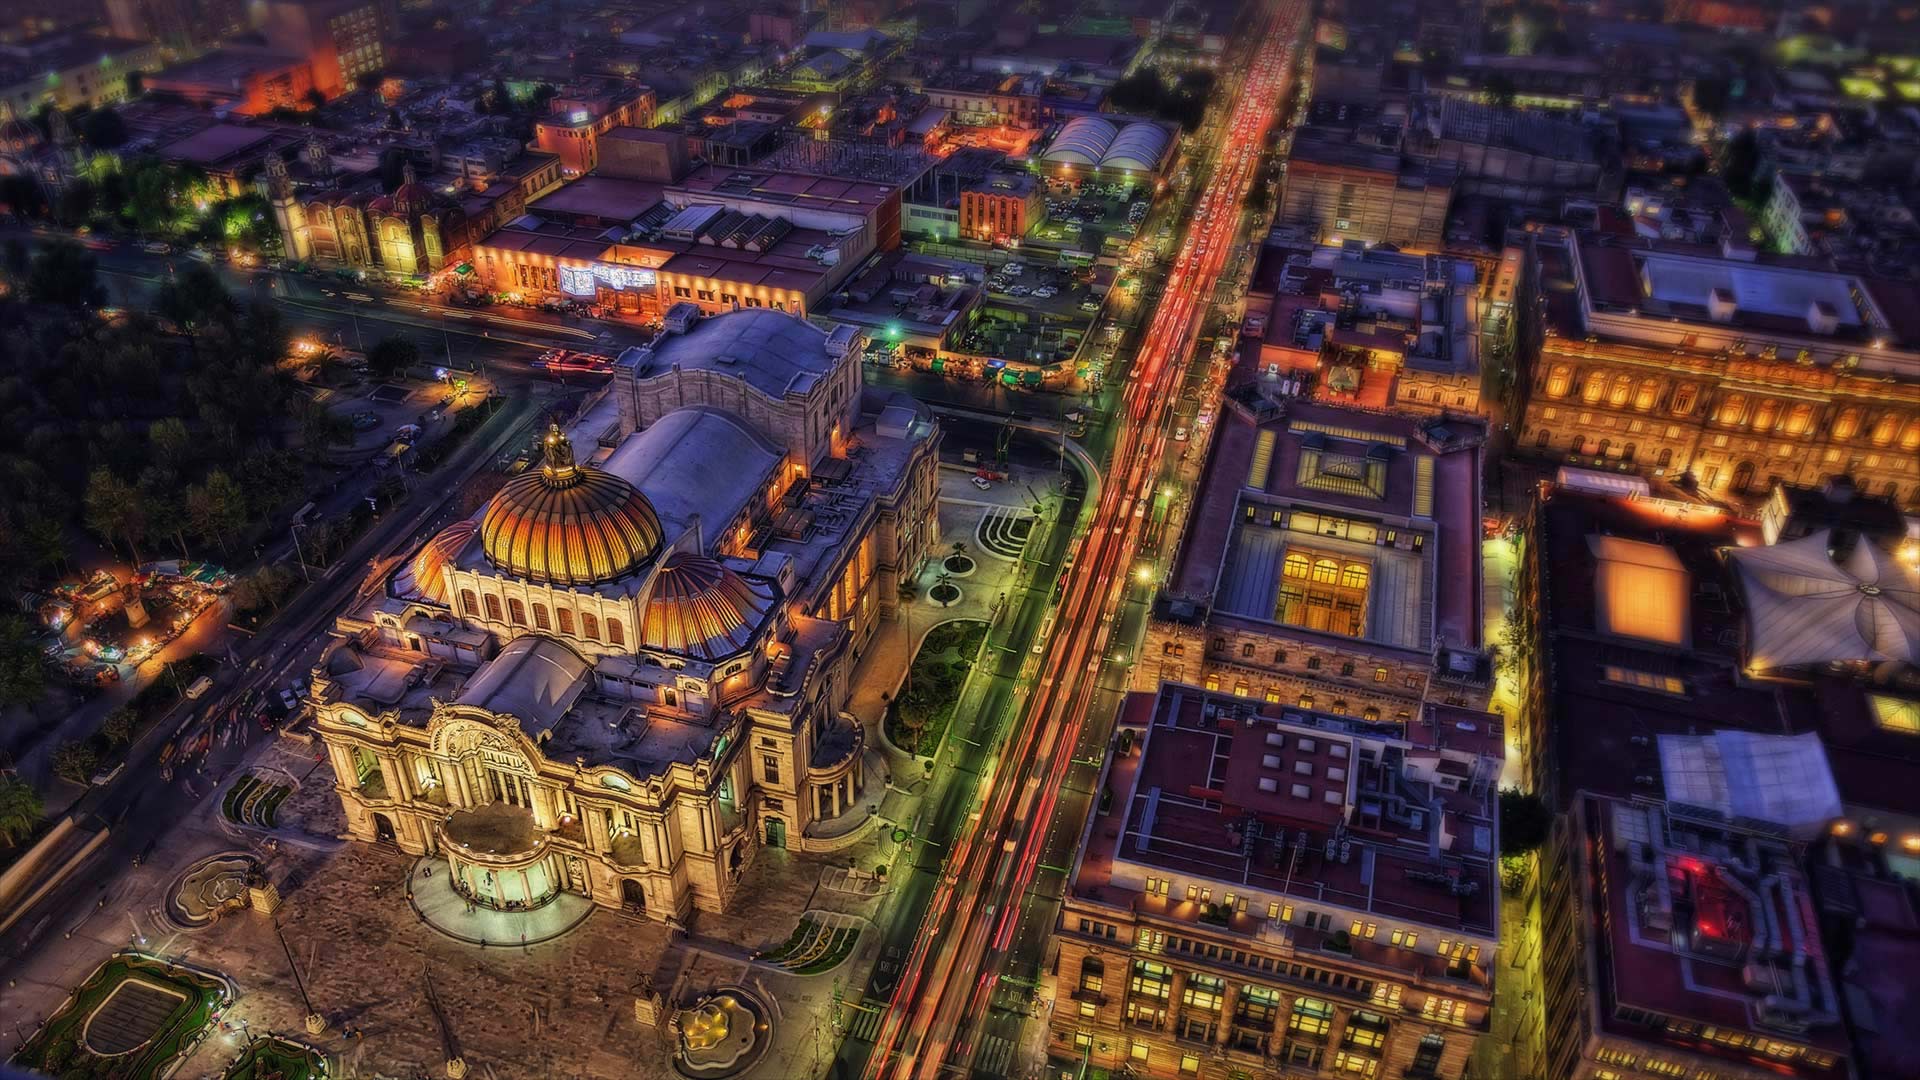 Palacio de Bellas Artes, Mexico City, Mexico - Lukas Bischoff Photograph/Shutterstock)